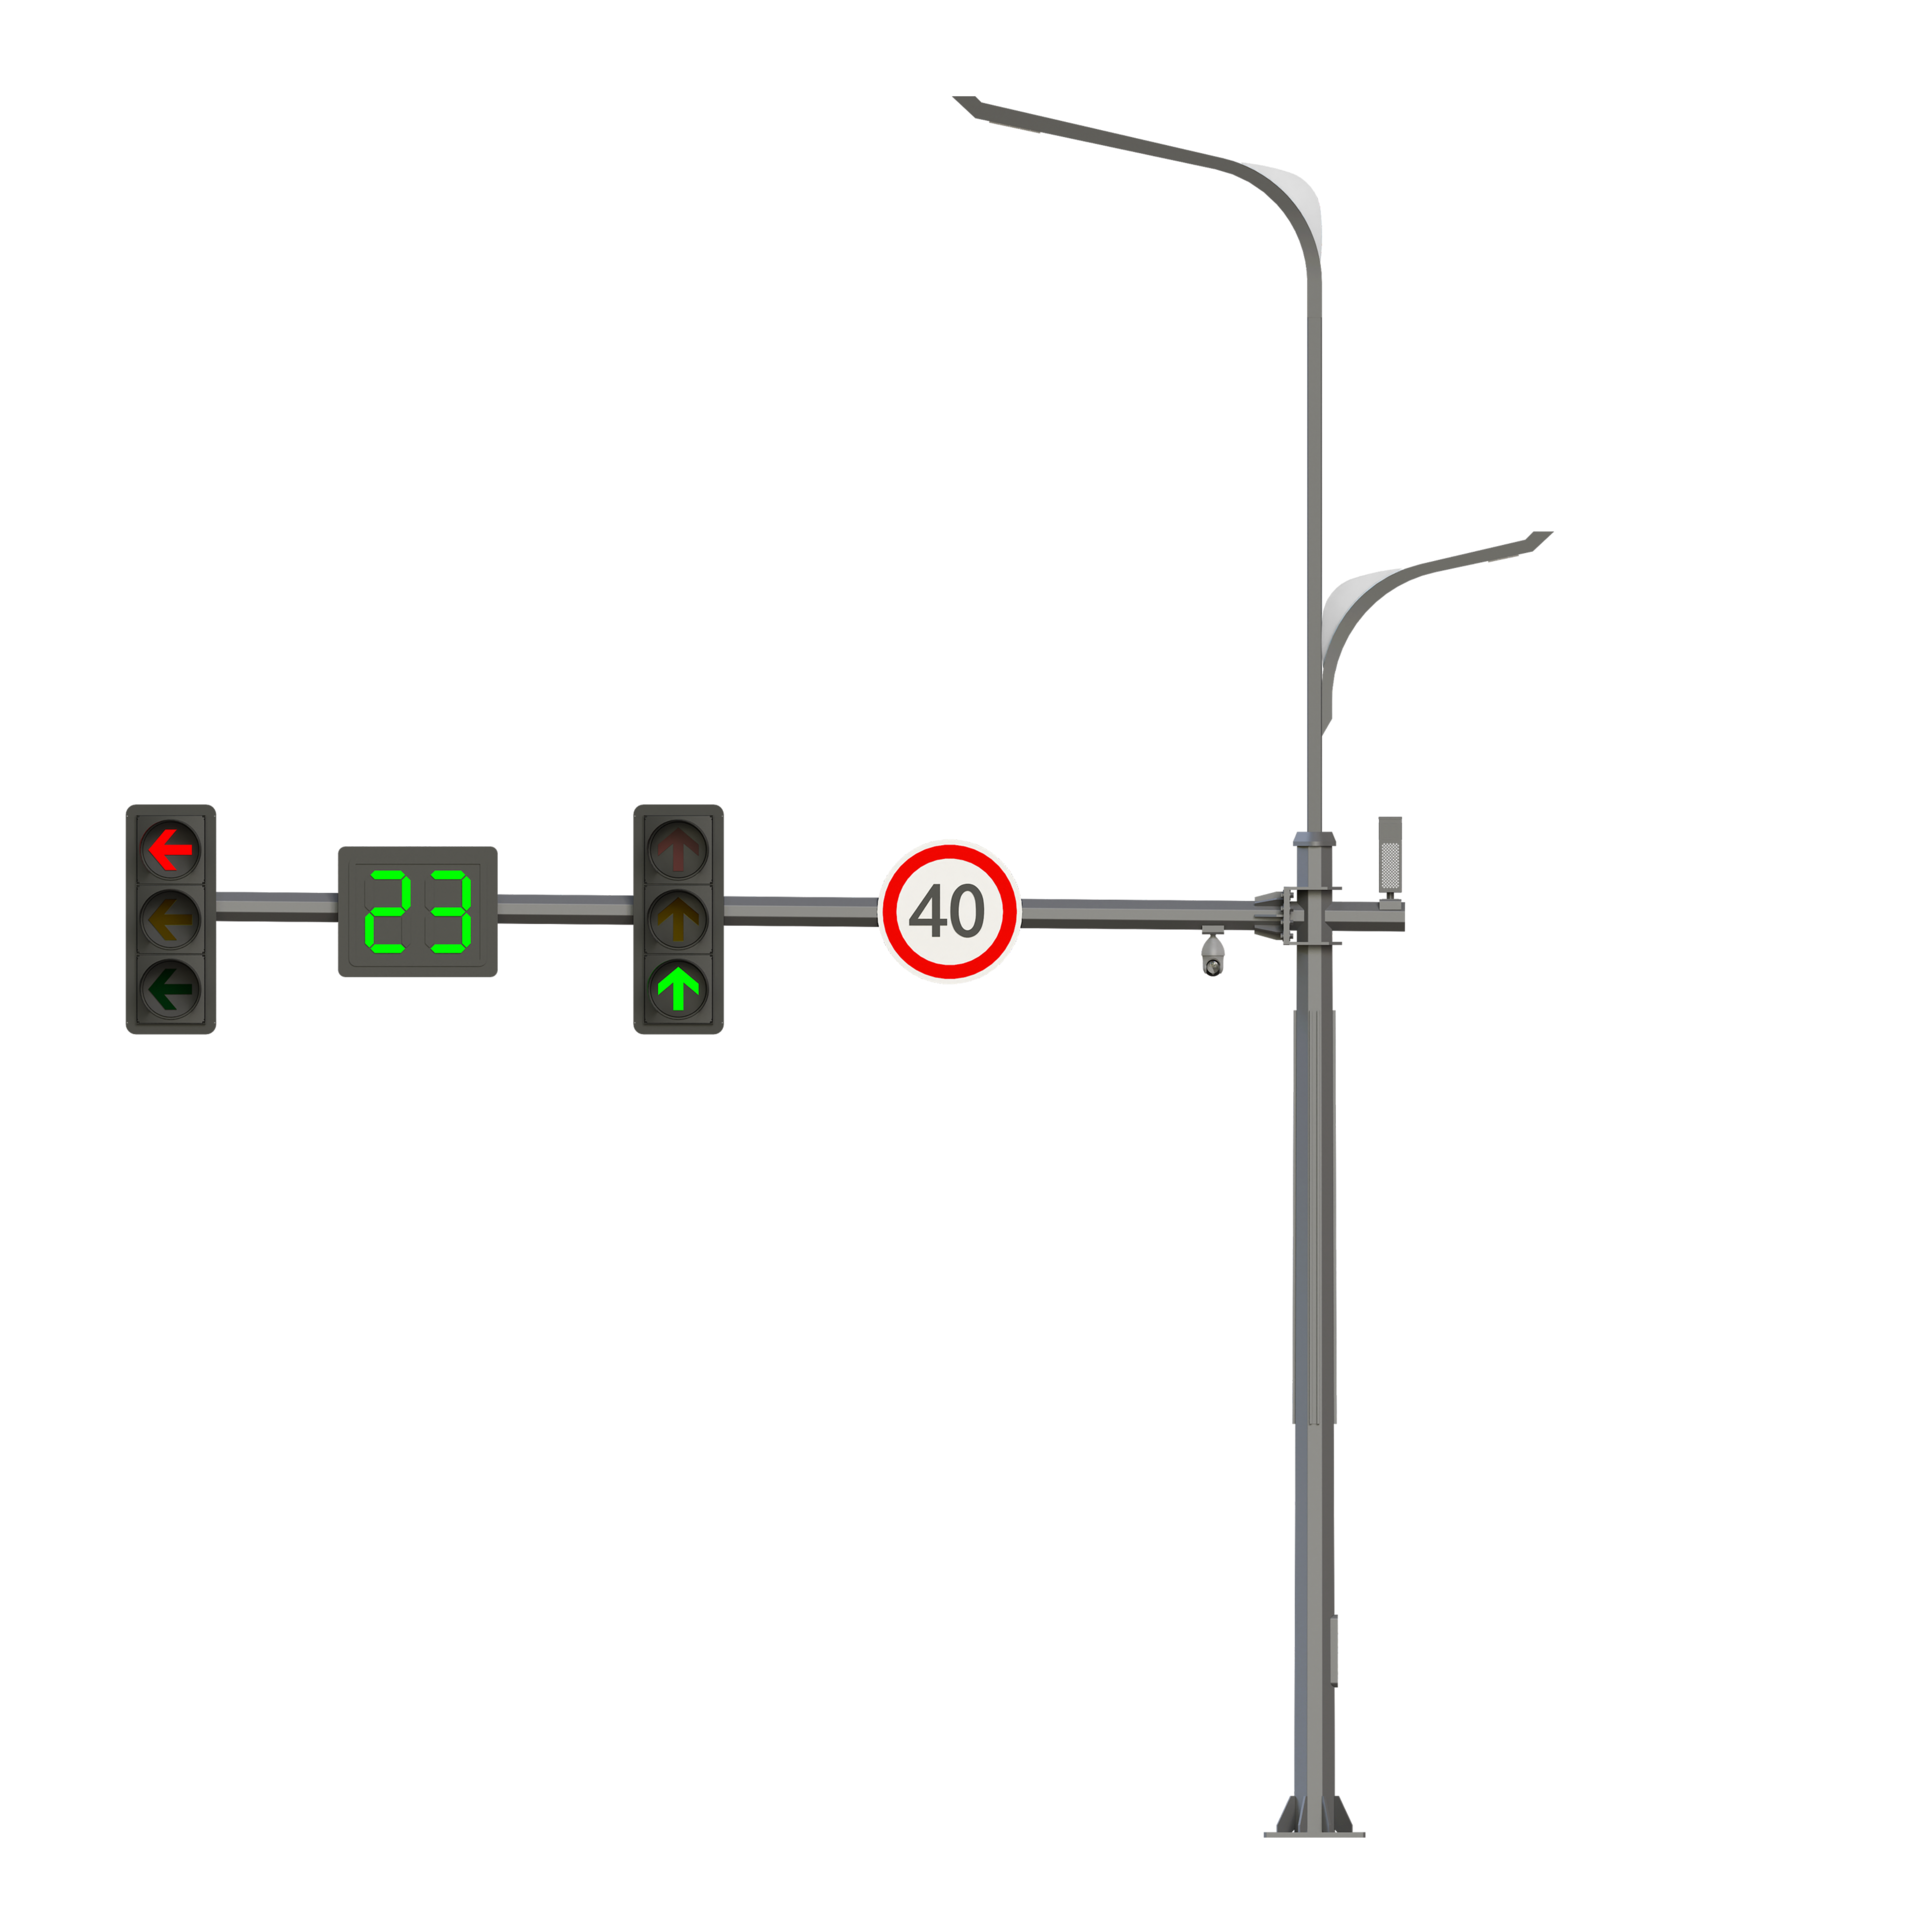 5G智慧路灯对城市的交通安全等方面的精准控制